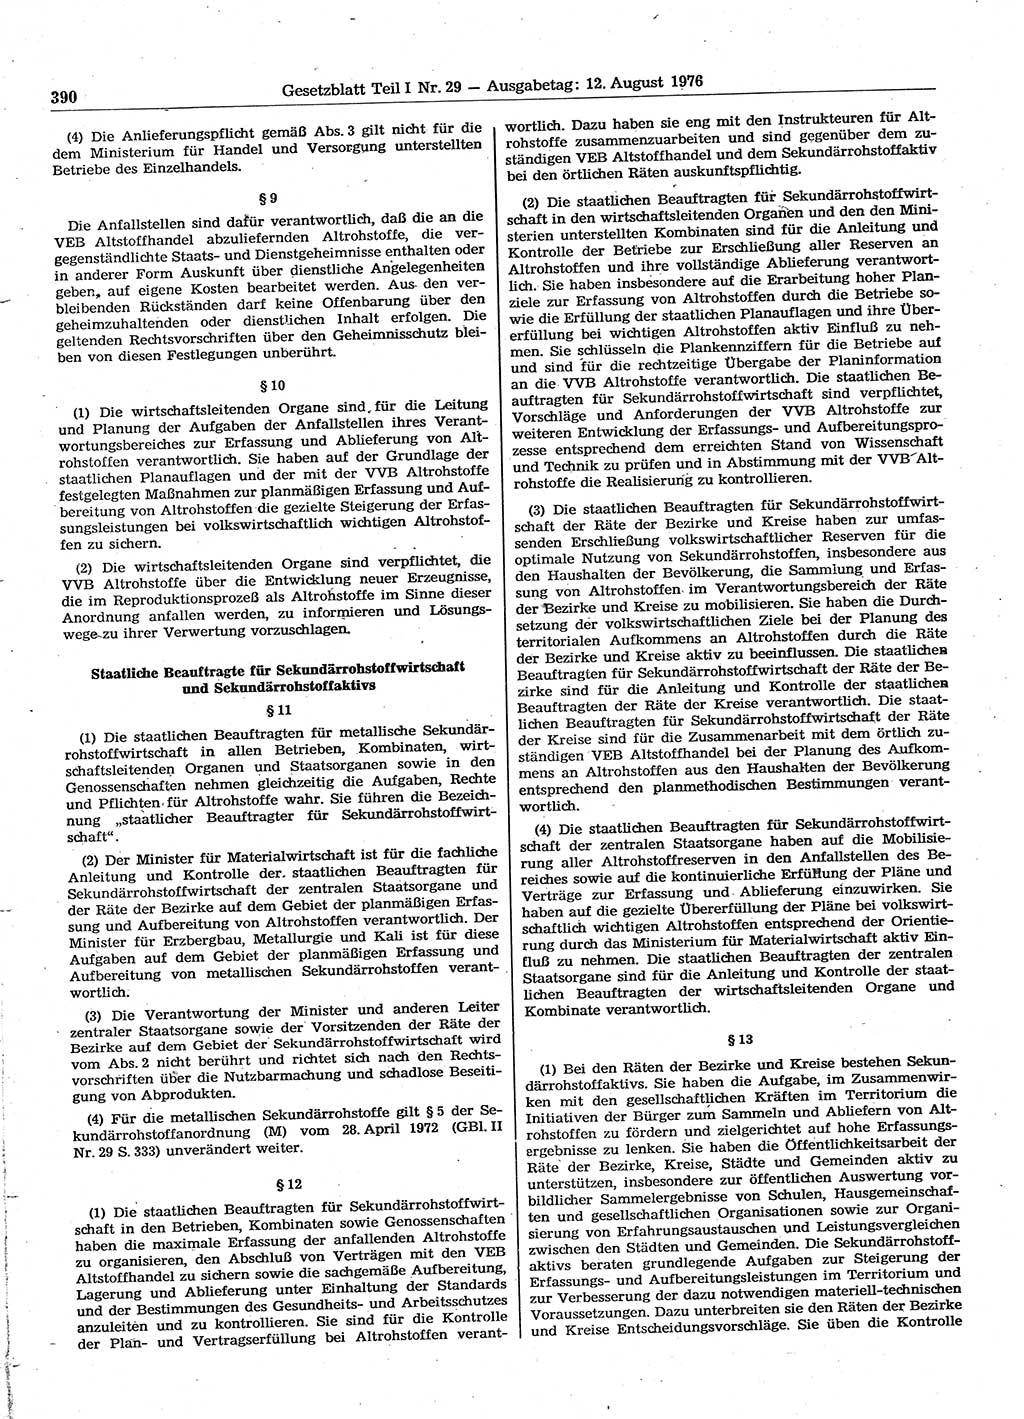 Gesetzblatt (GBl.) der Deutschen Demokratischen Republik (DDR) Teil Ⅰ 1976, Seite 390 (GBl. DDR Ⅰ 1976, S. 390)